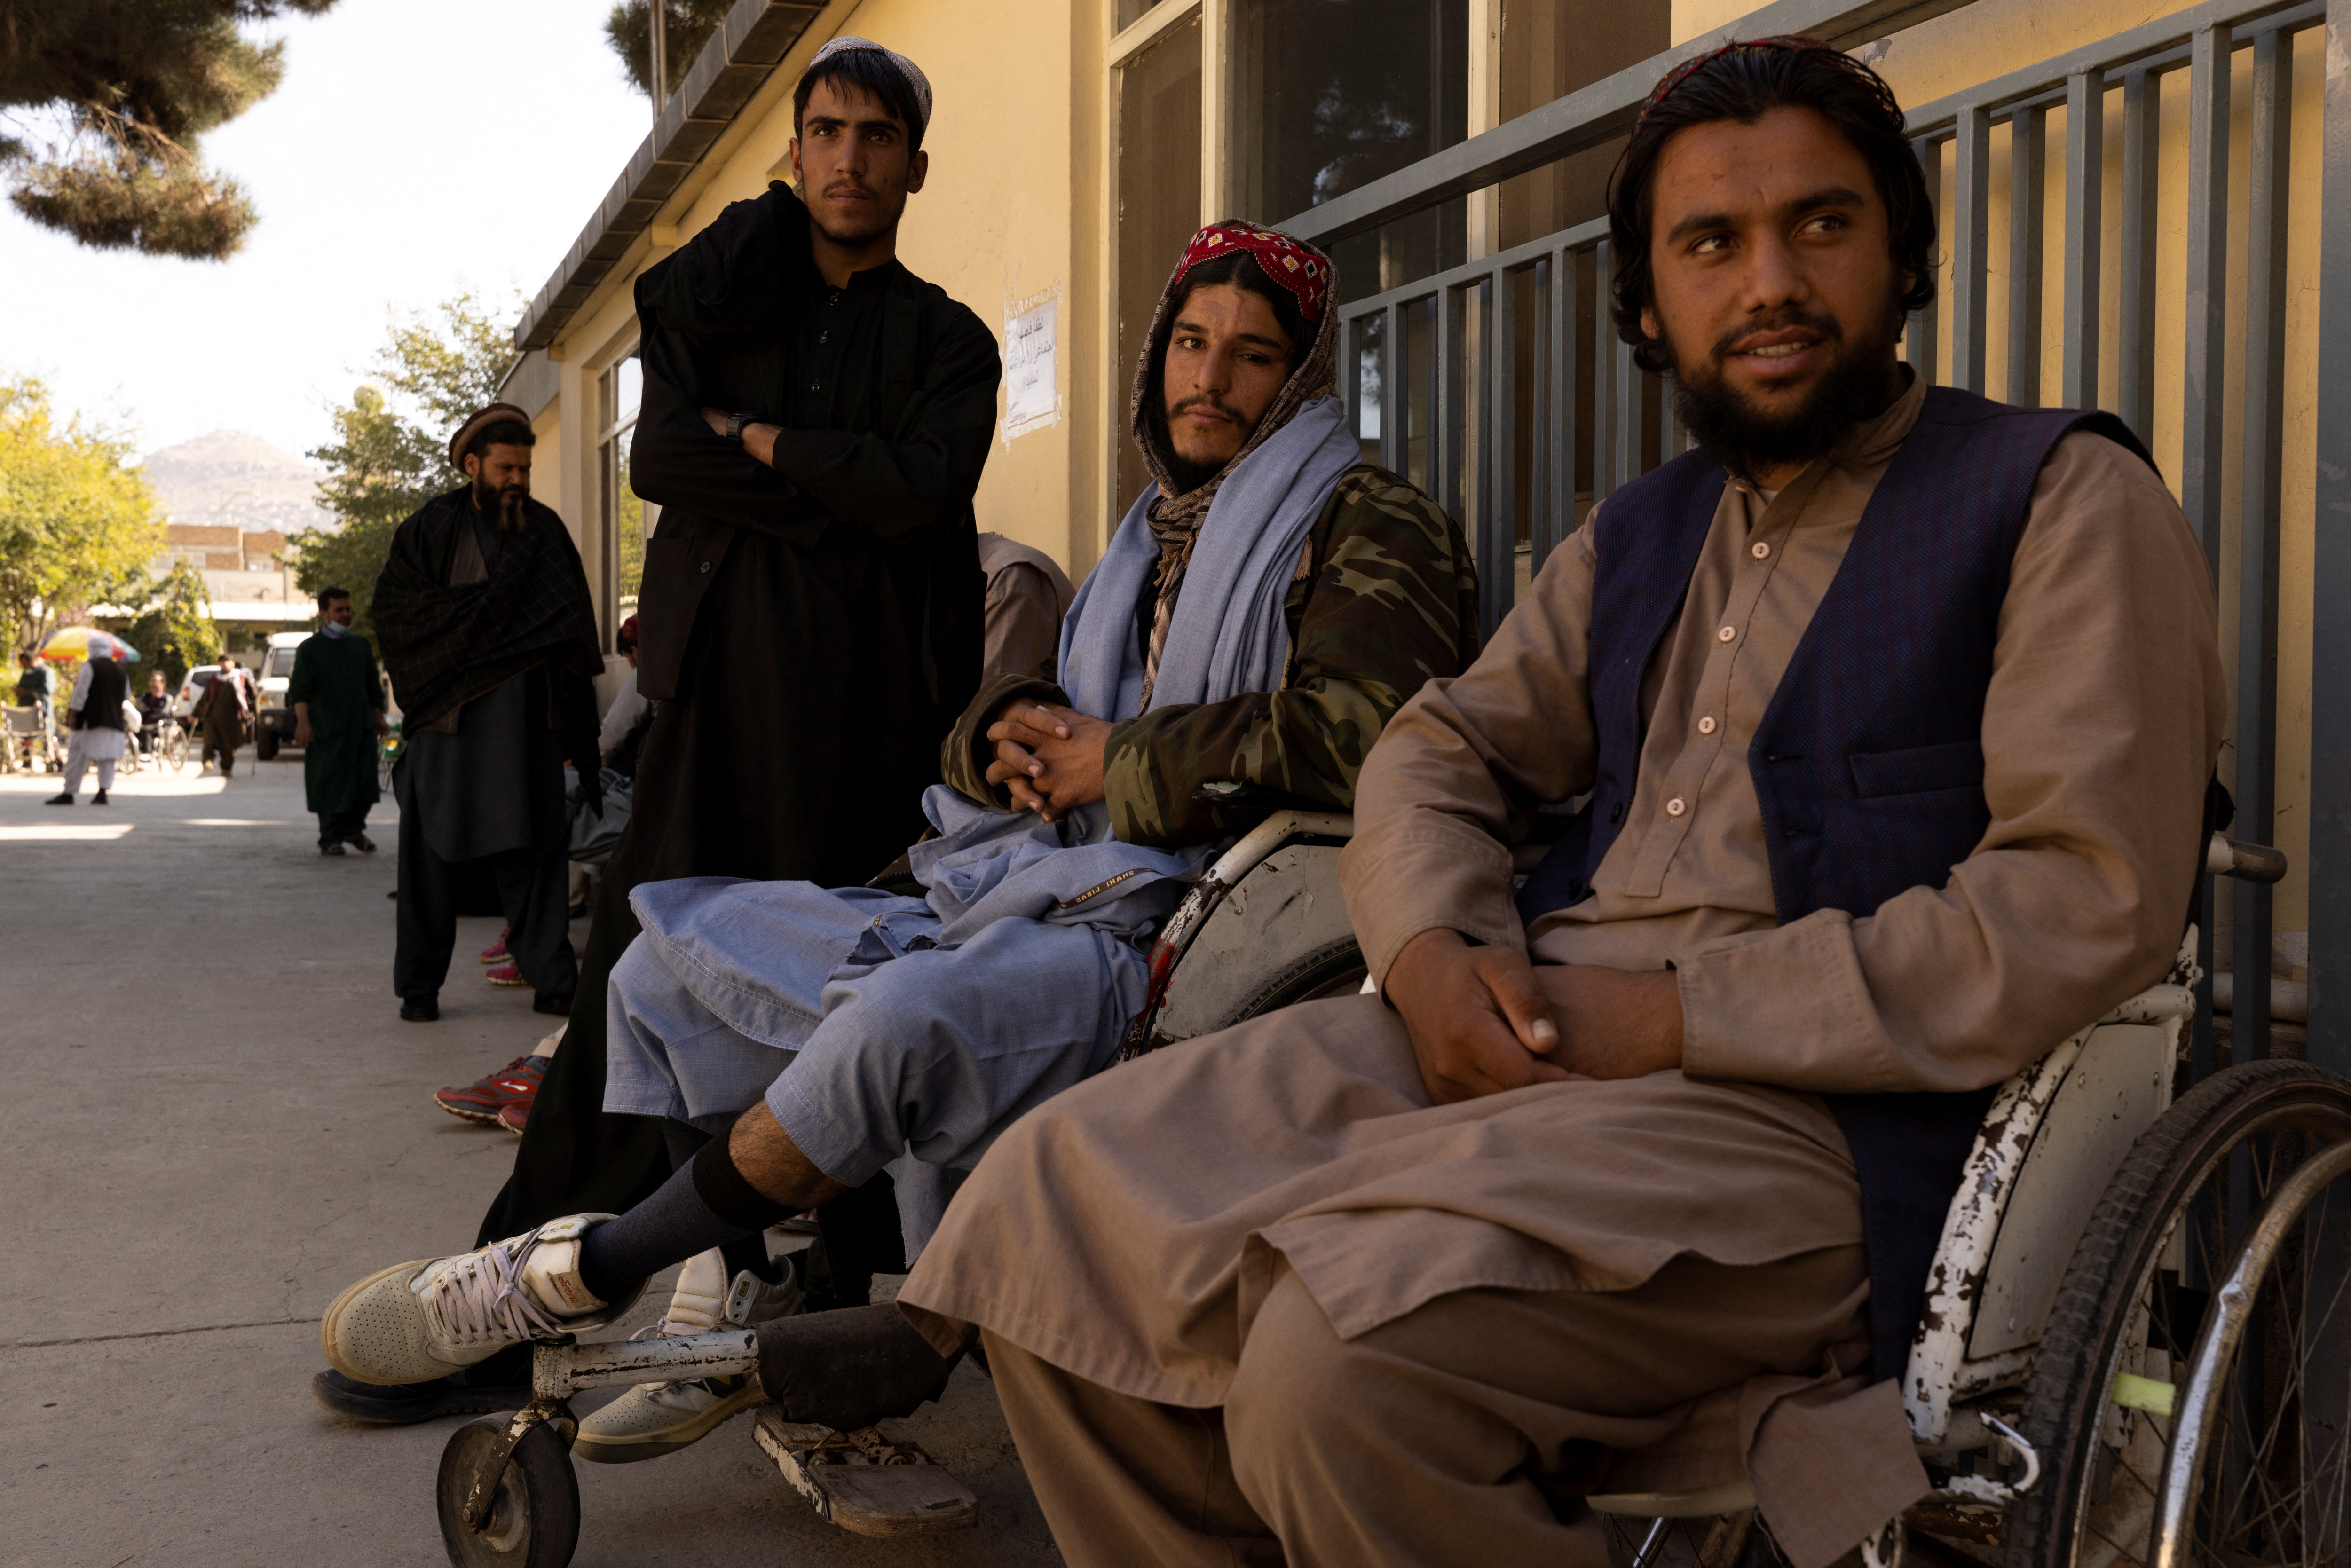 Miembros talibanes en Kabul. Foto tomada el 17 de octubre de 2021. REUTERS/Jorge Silva

